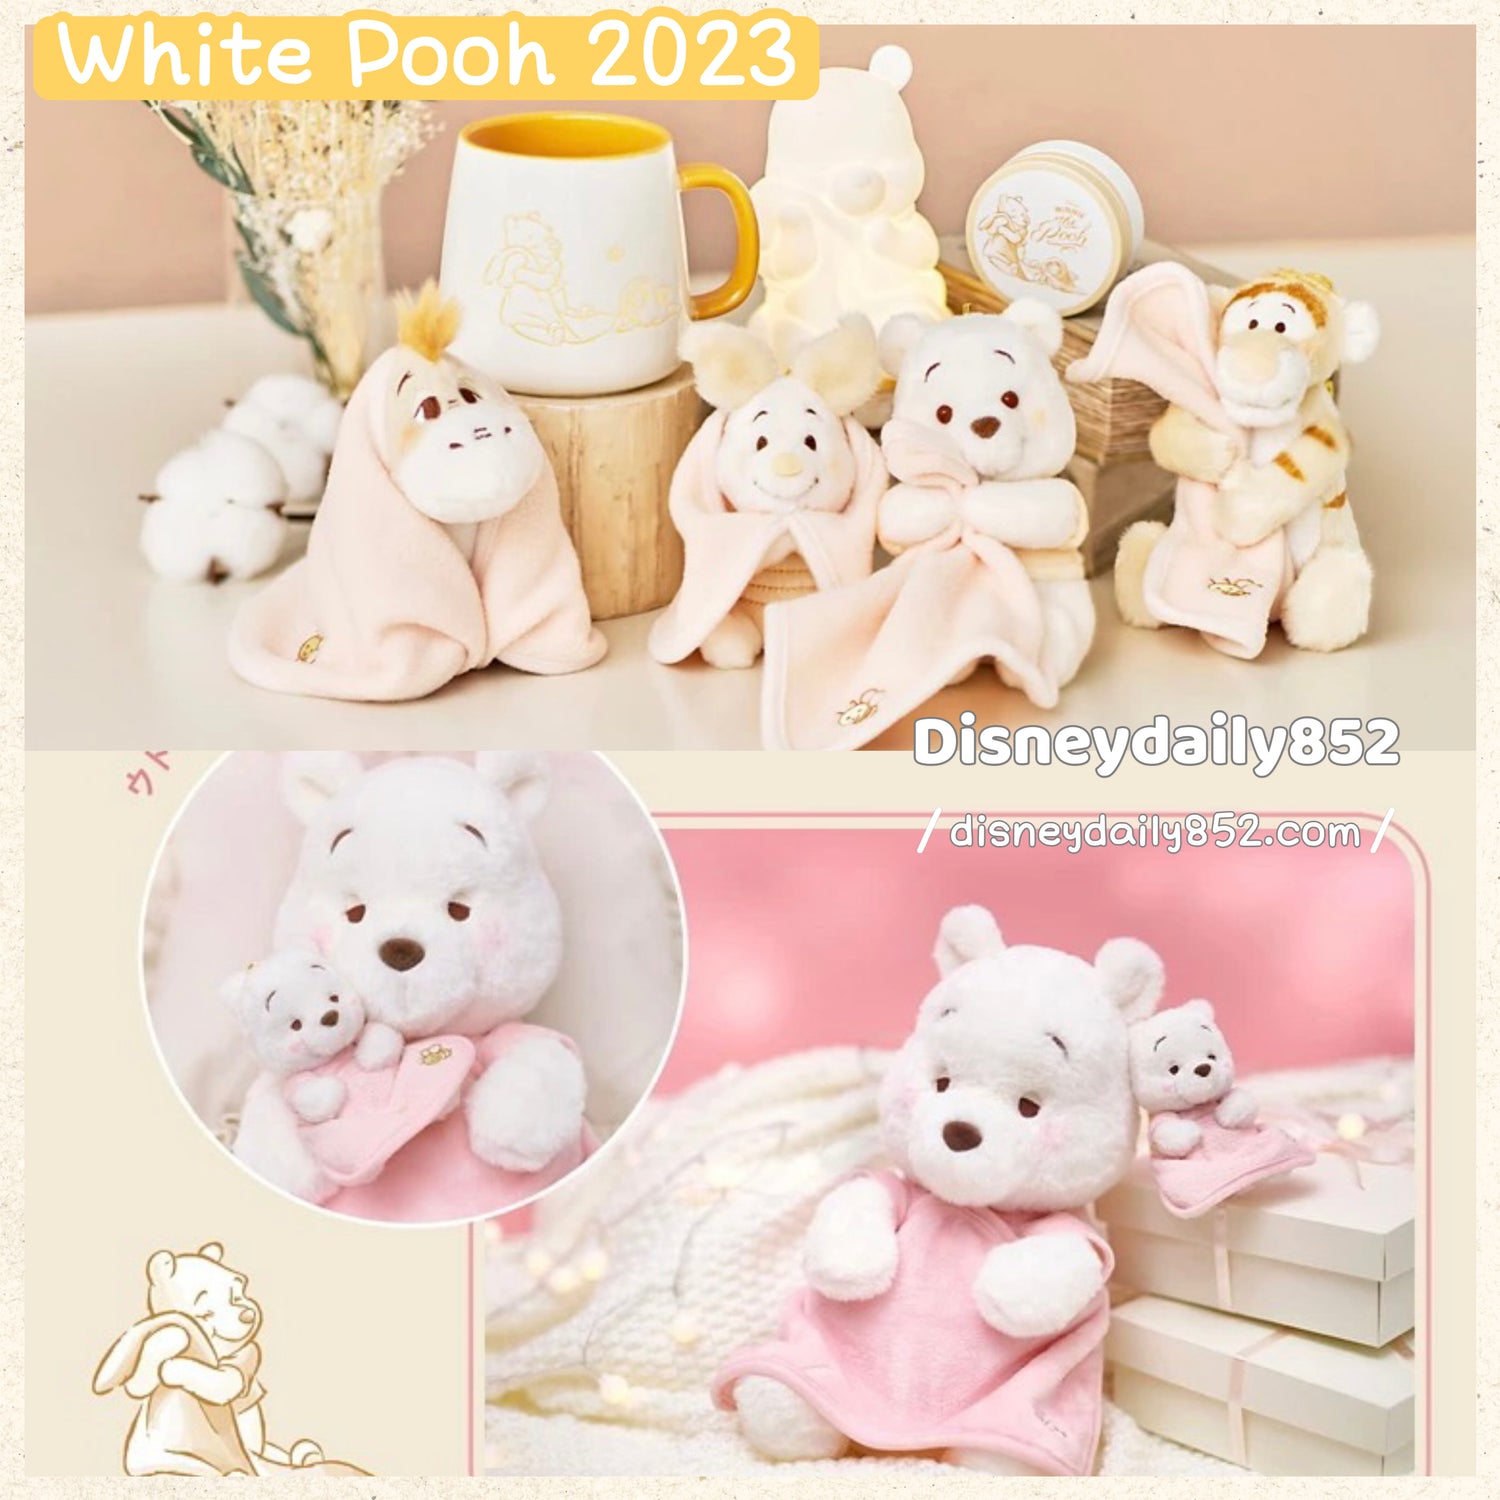 White Pooh 2023